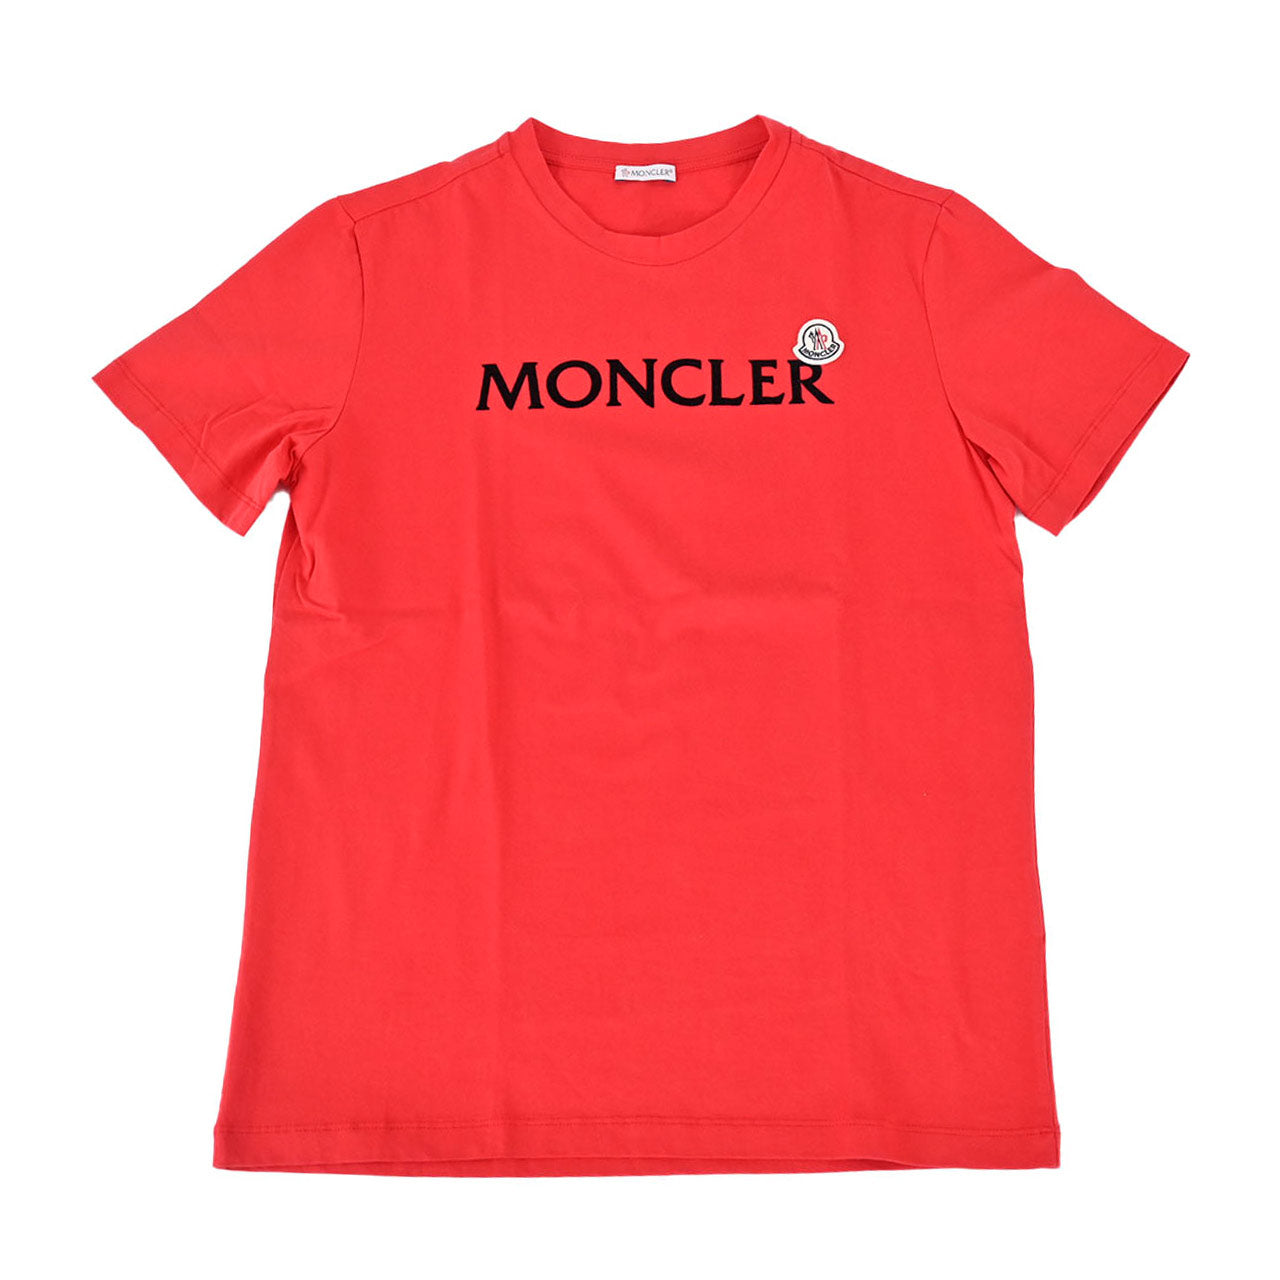 モンクレール MONCLER Tシャツ 8C000 22 8390T 544 レッド 秋冬 メンズ